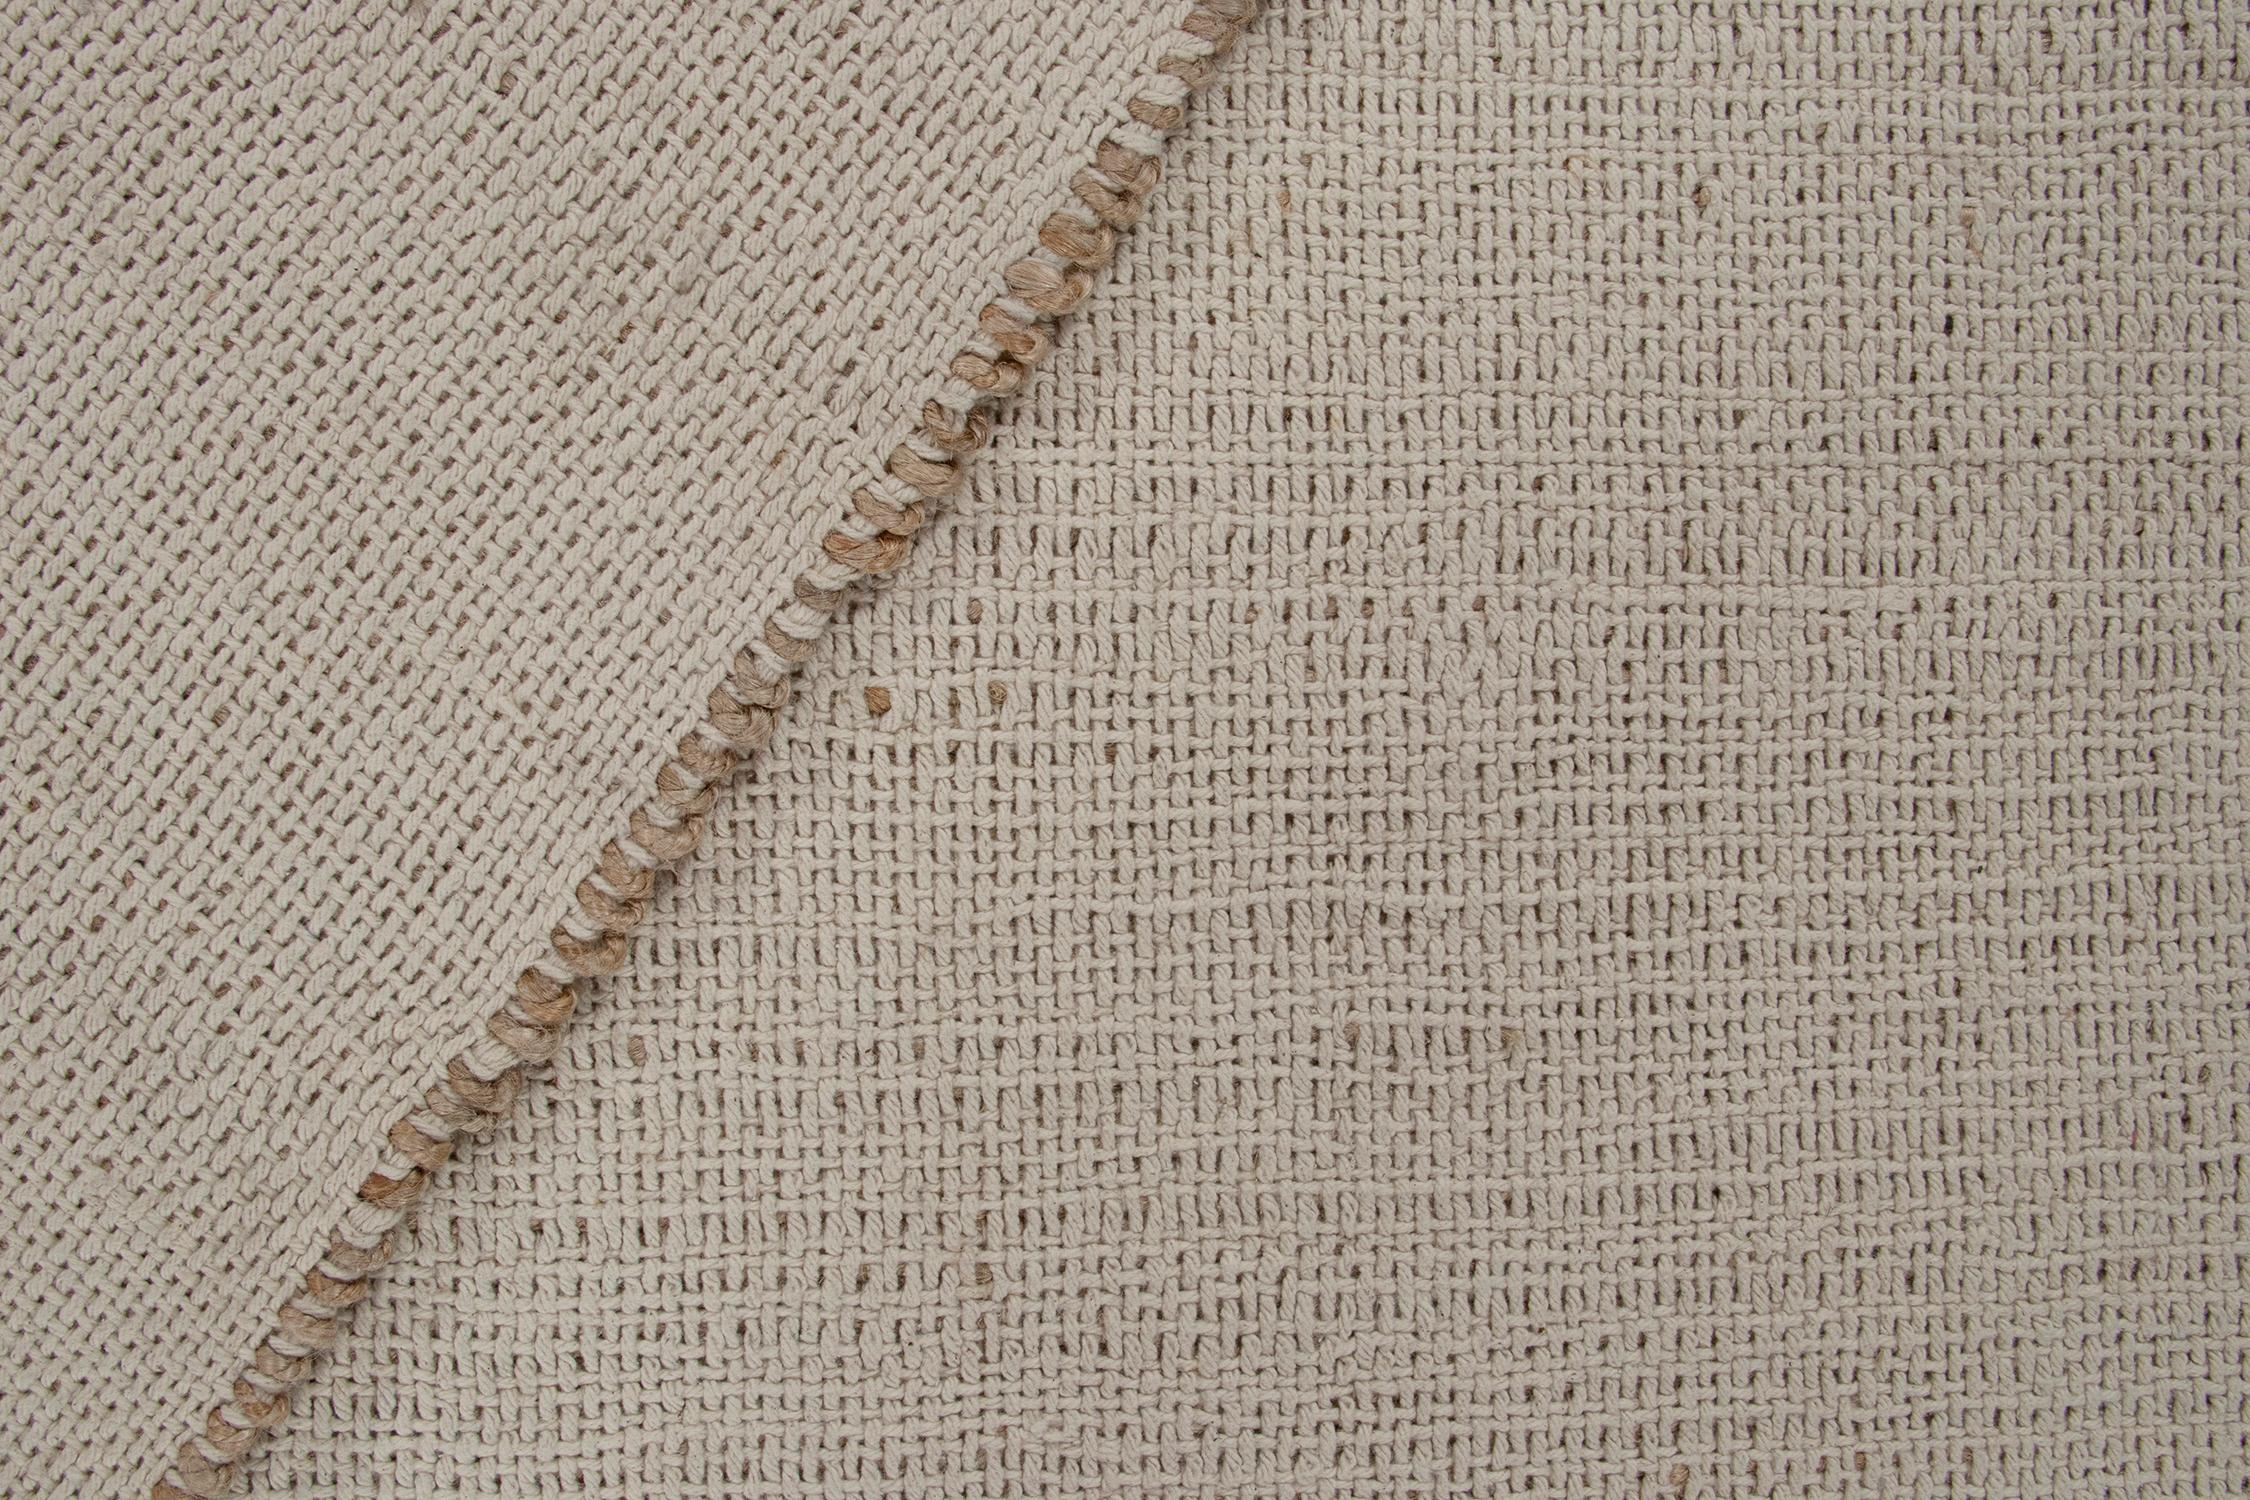 Laine Rug & Kilim's Contemporary Jute Kilim in White and Beige-Brown Stripes (Kilim de jute contemporain à rayures blanches et beige-brun) en vente